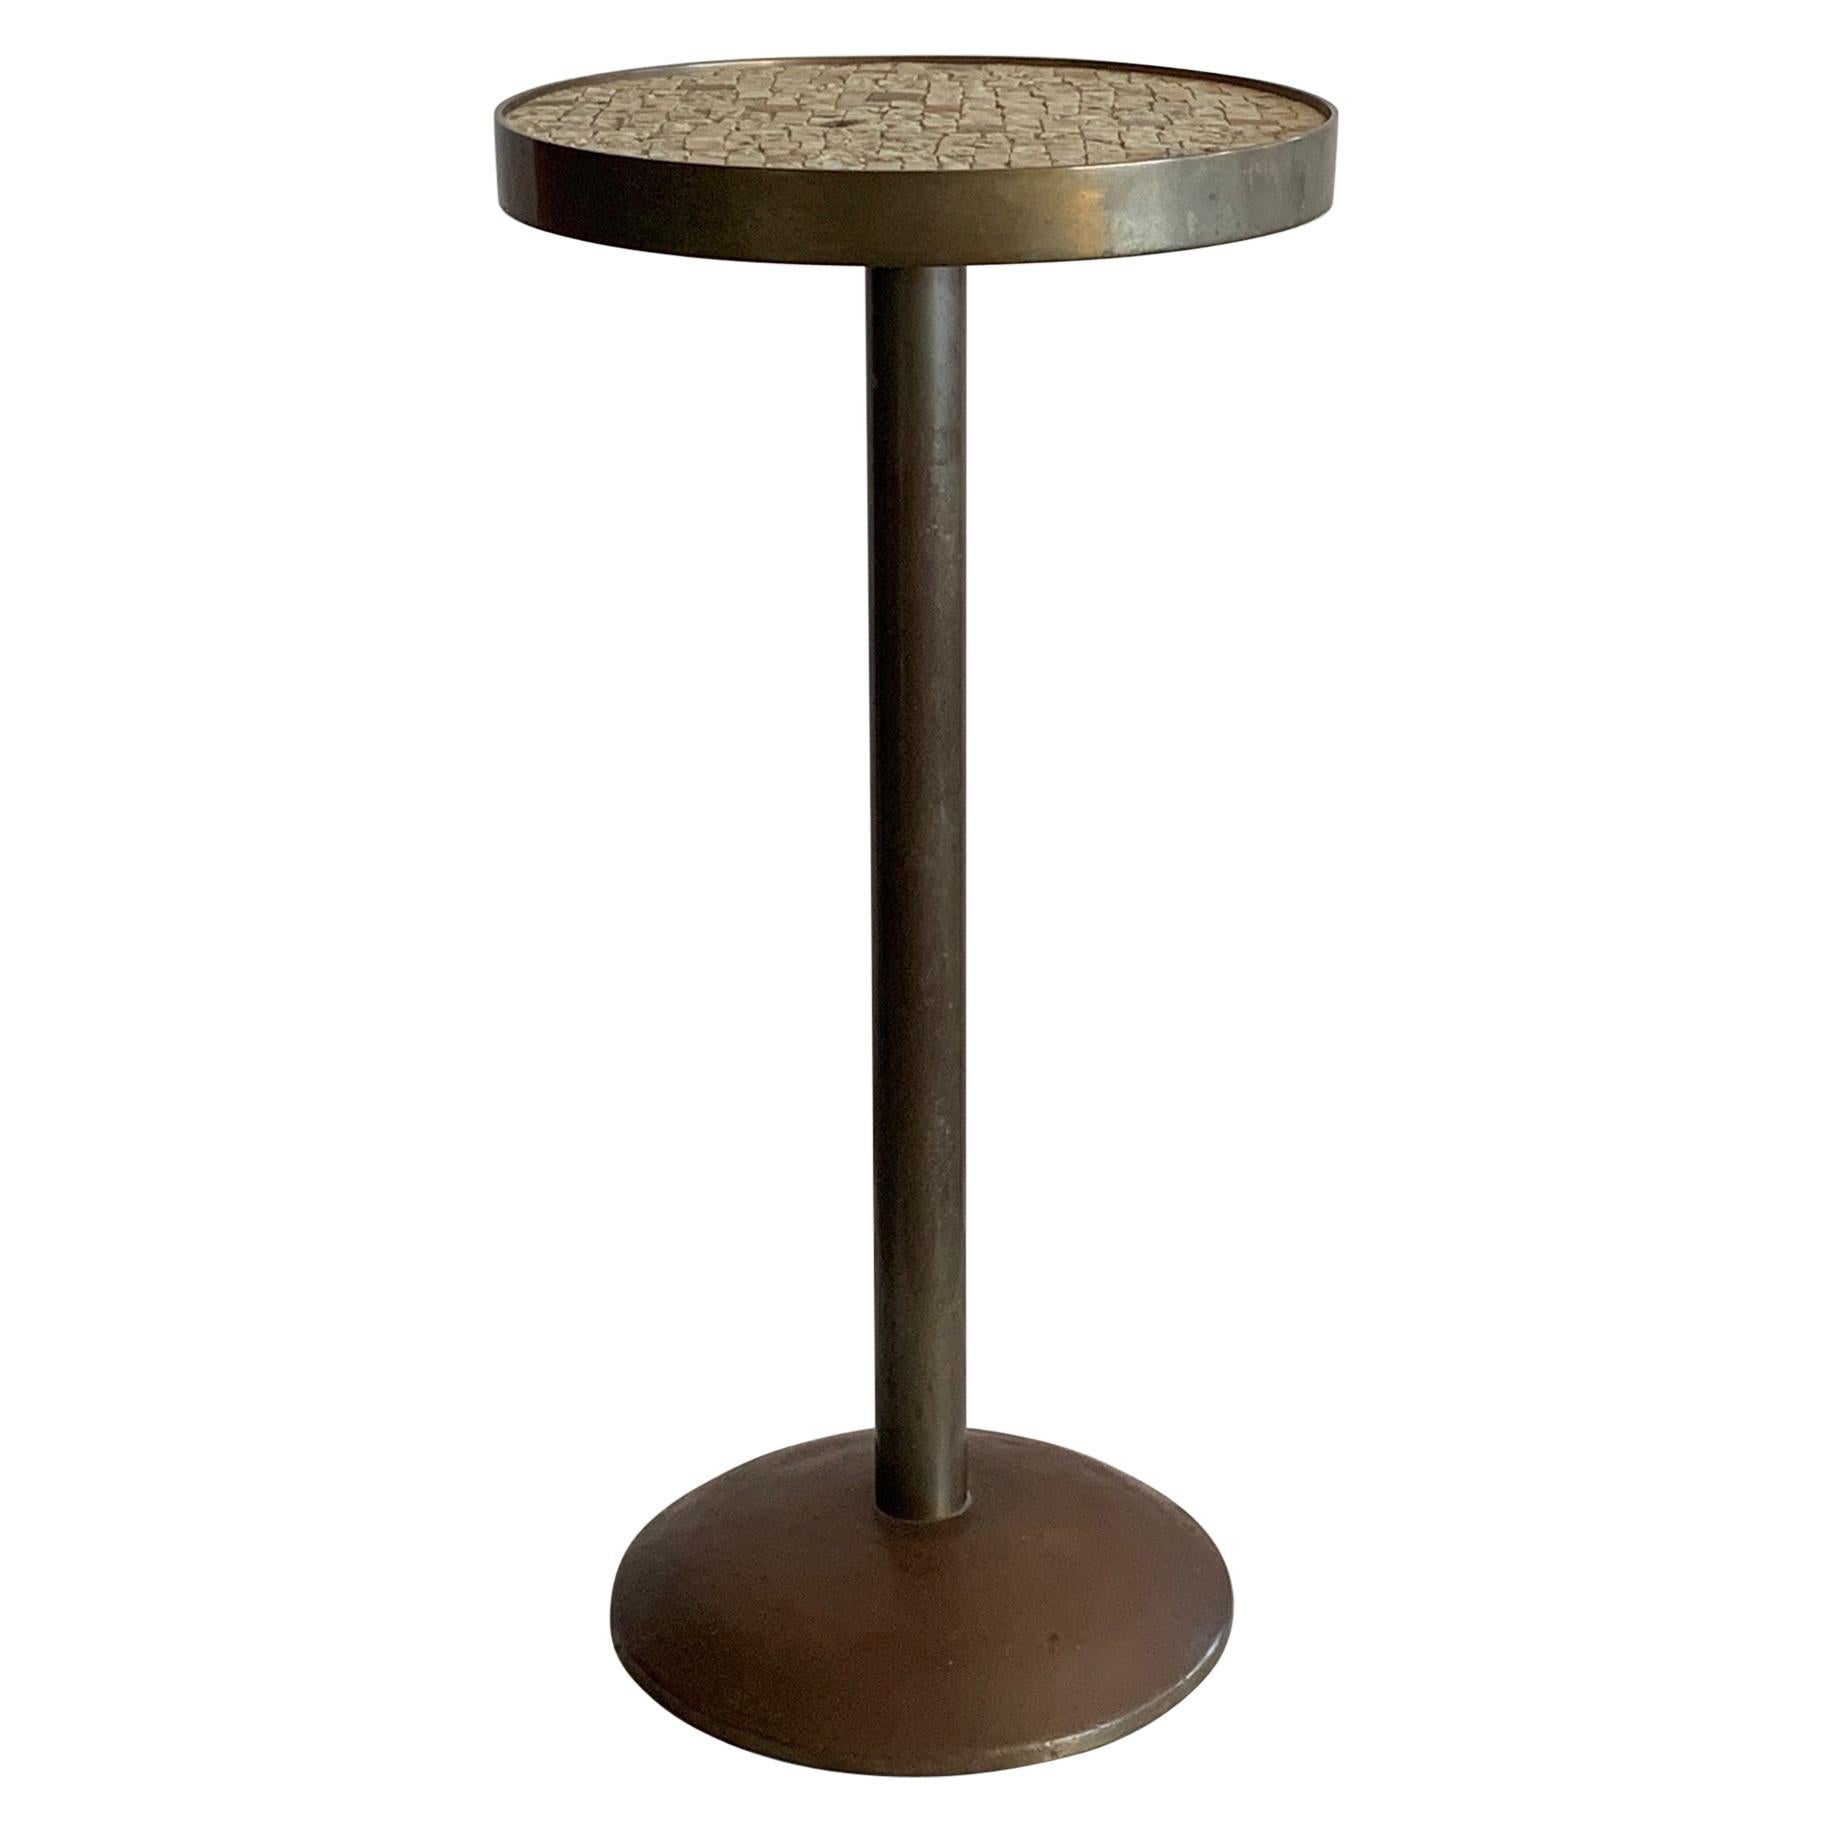 Table minimaliste en bronze avec dessus en carreaux